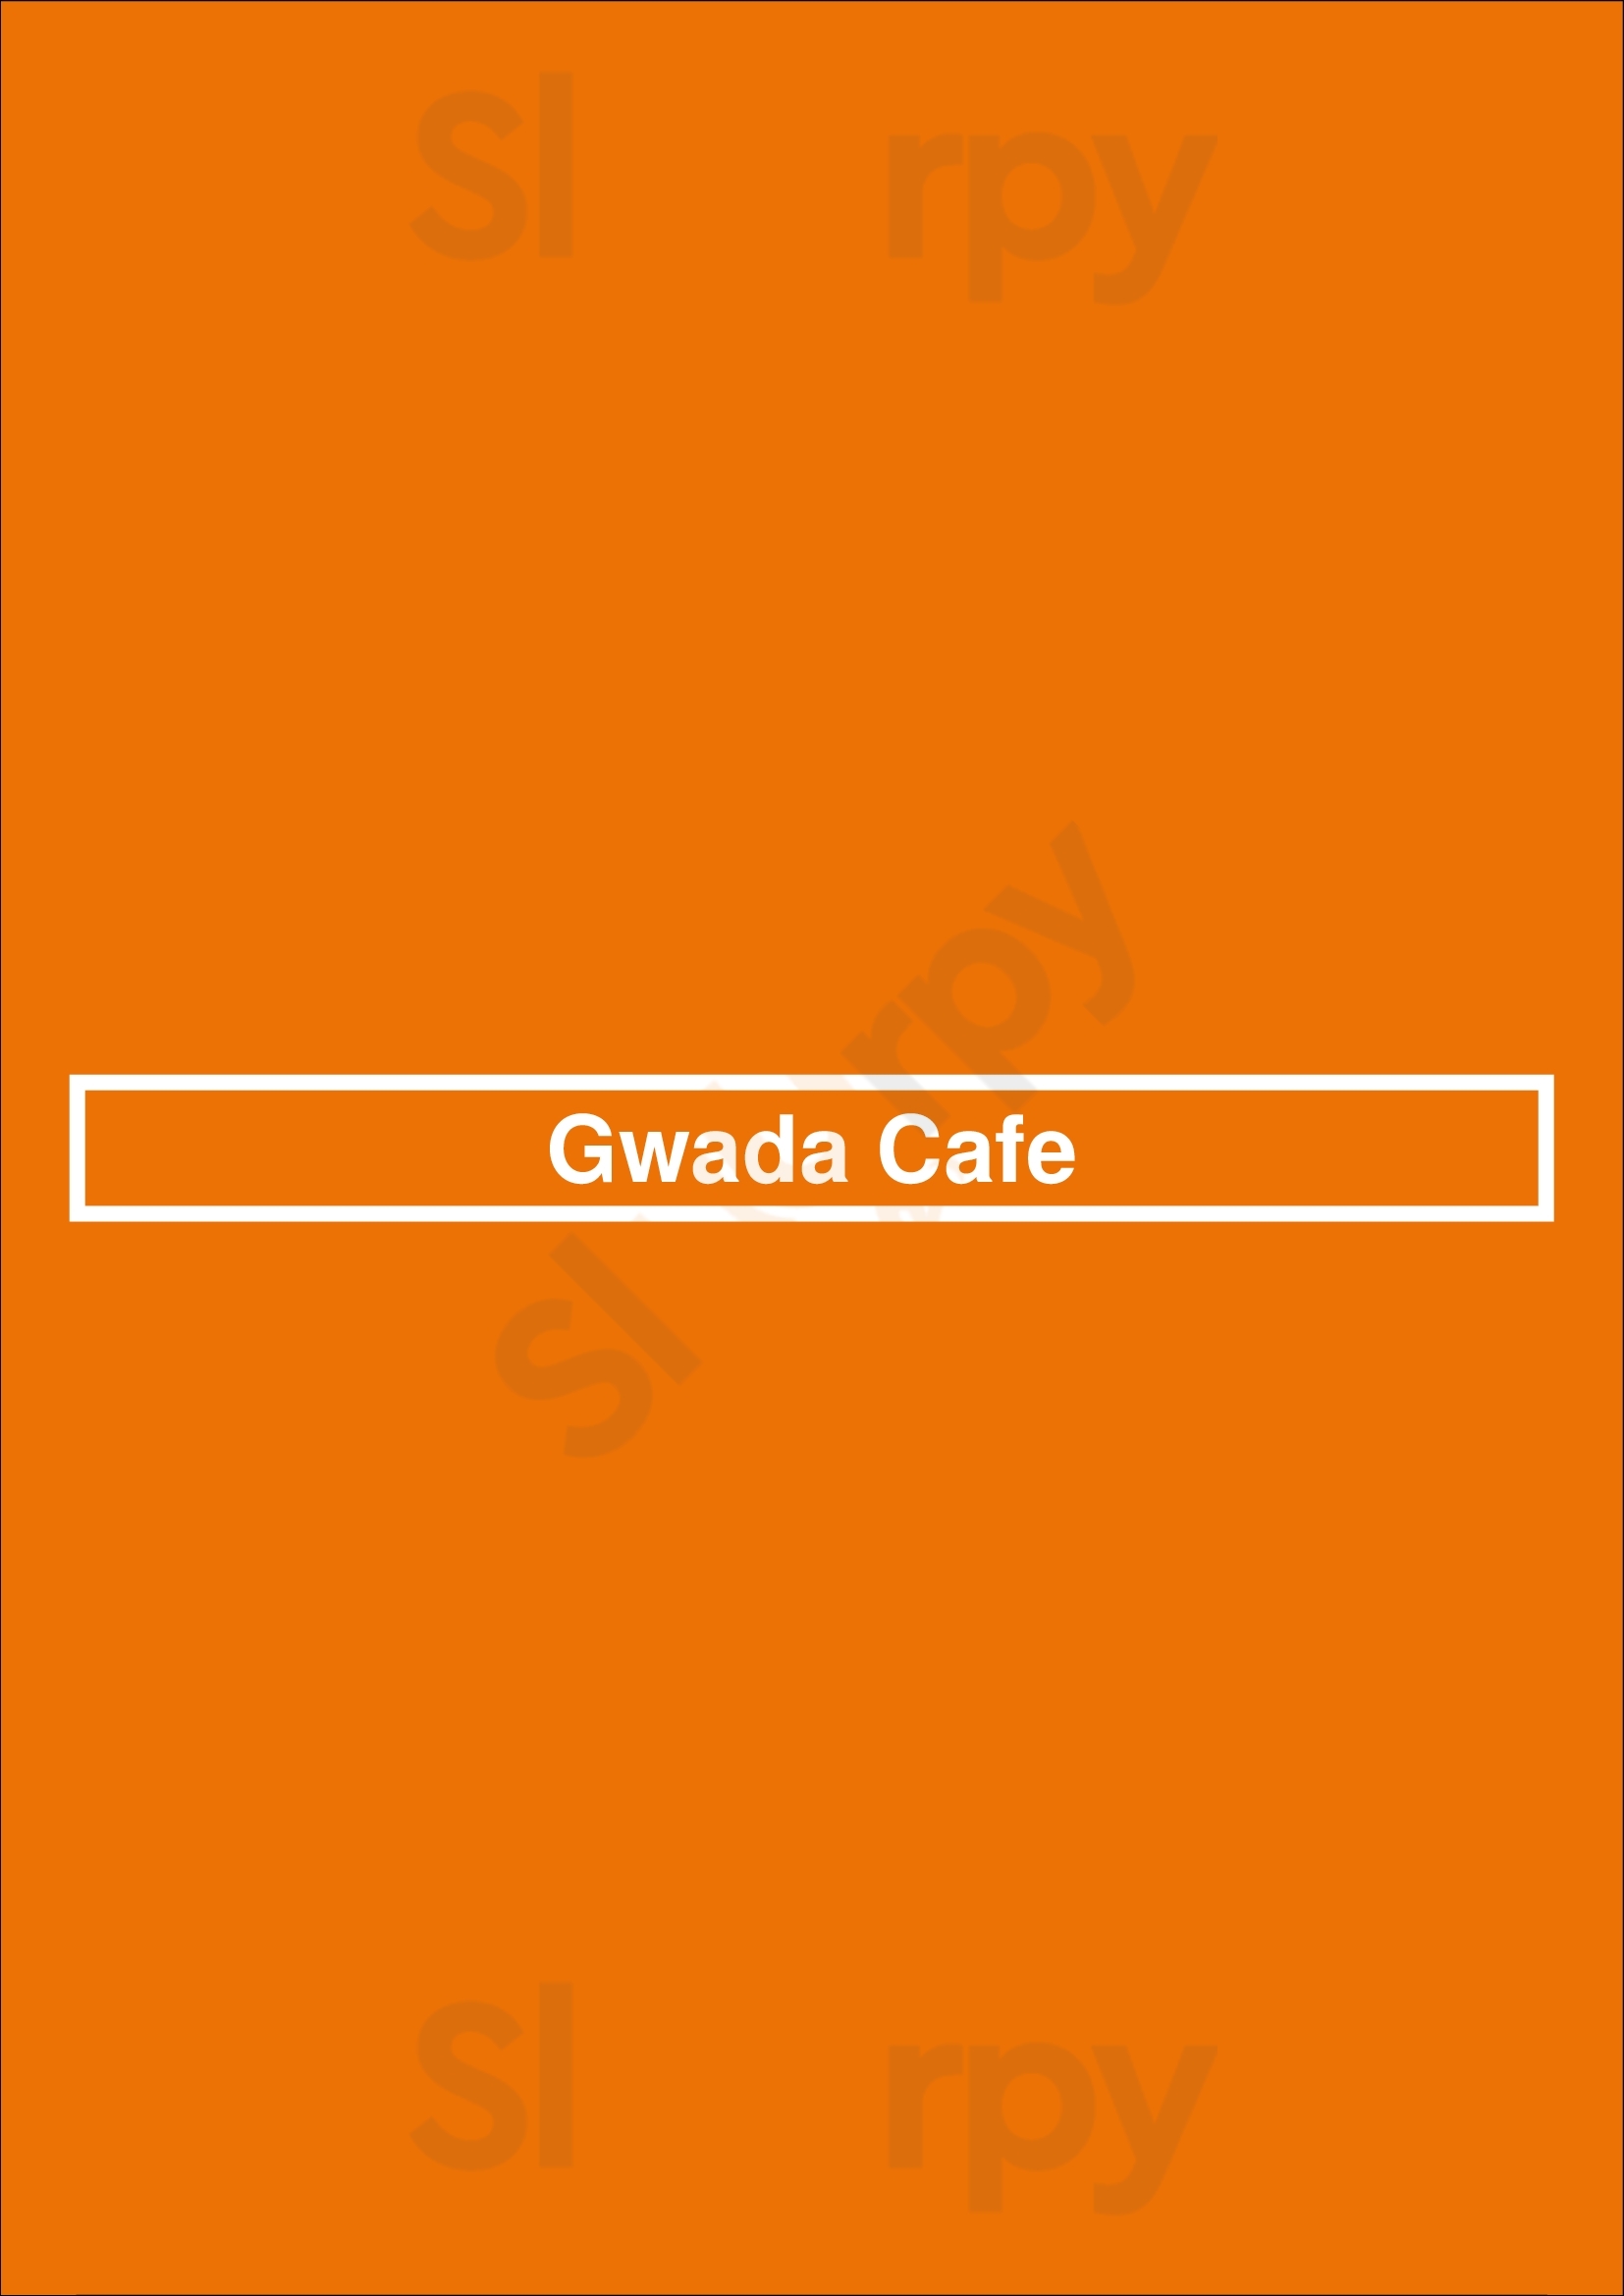 Gwada Cafe Paris Menu - 1